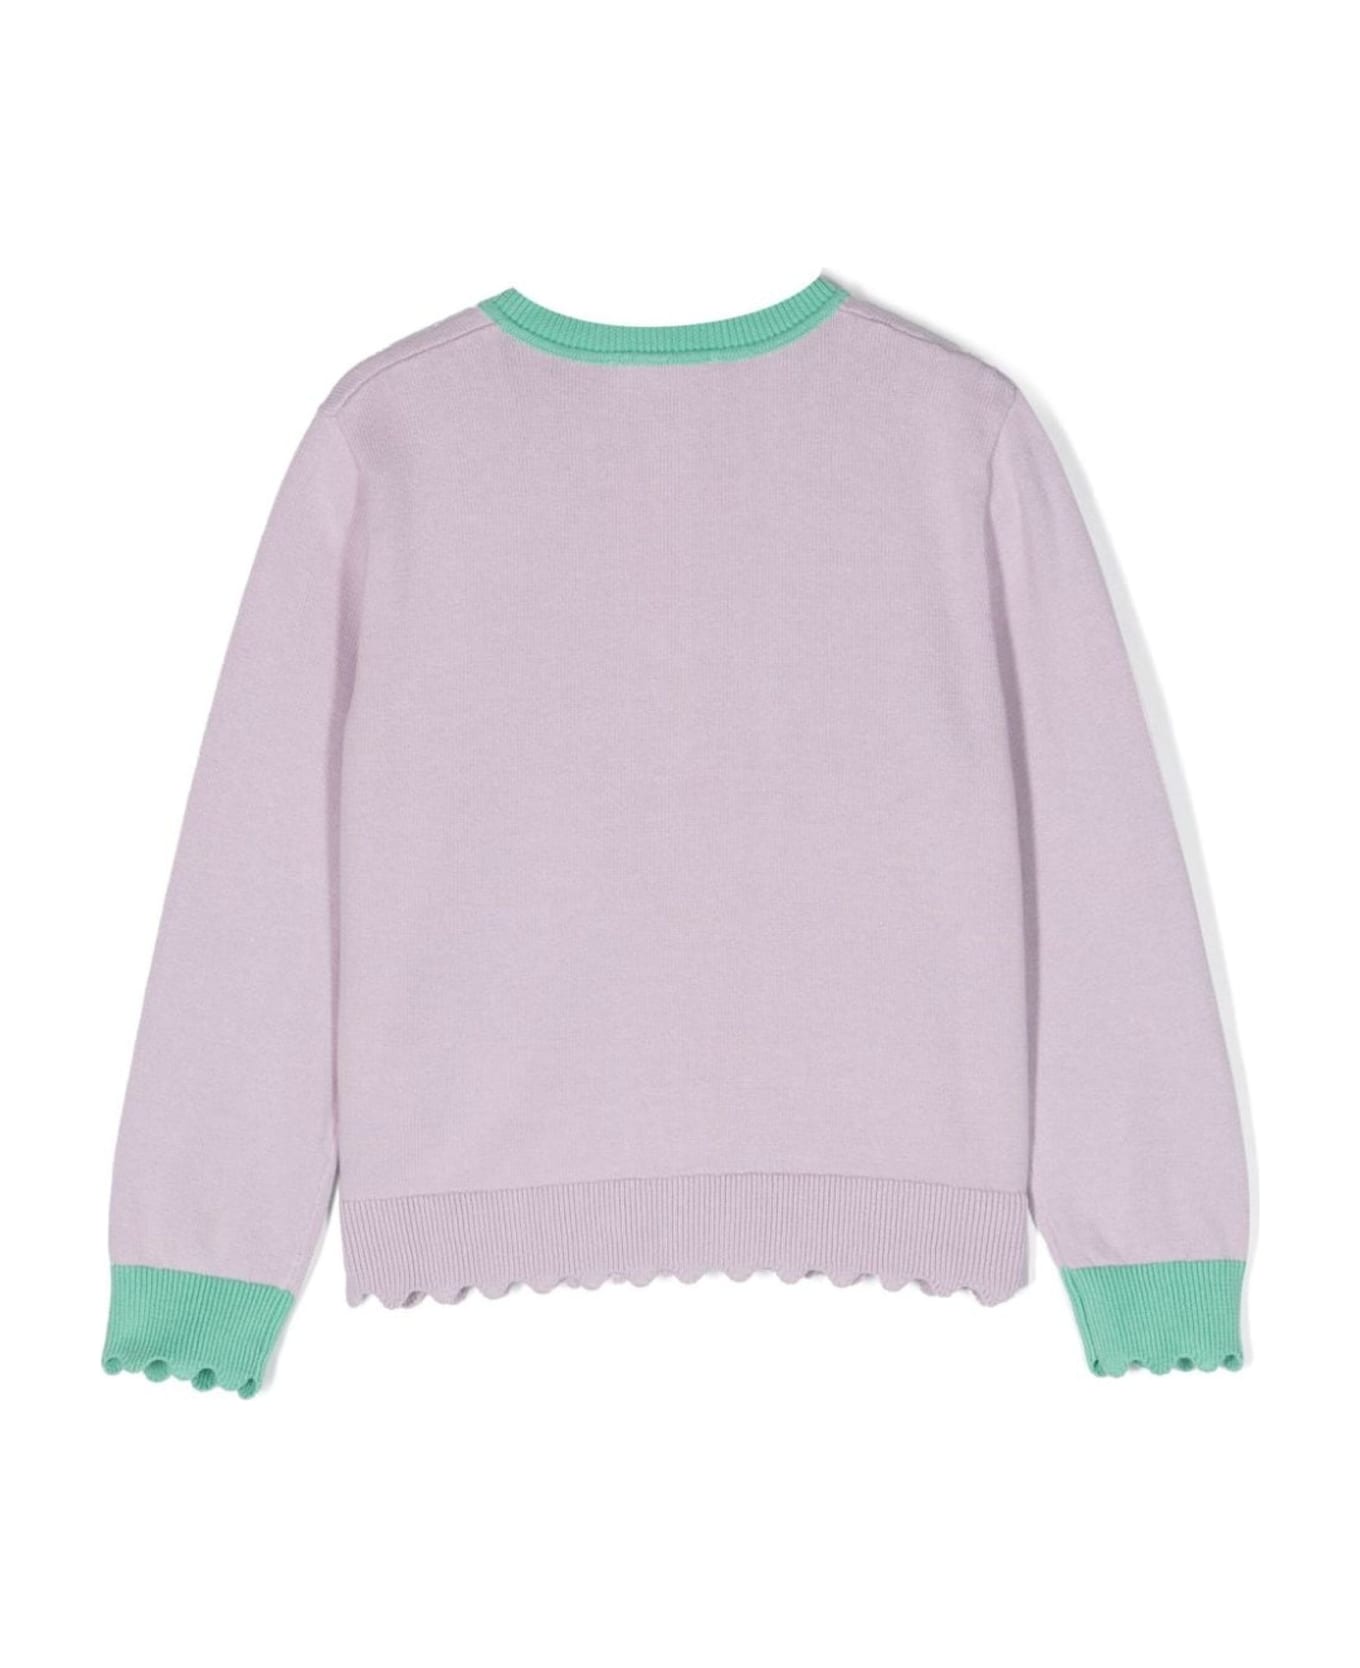 Stella McCartney Kids Sweaters Lilac - Lilac